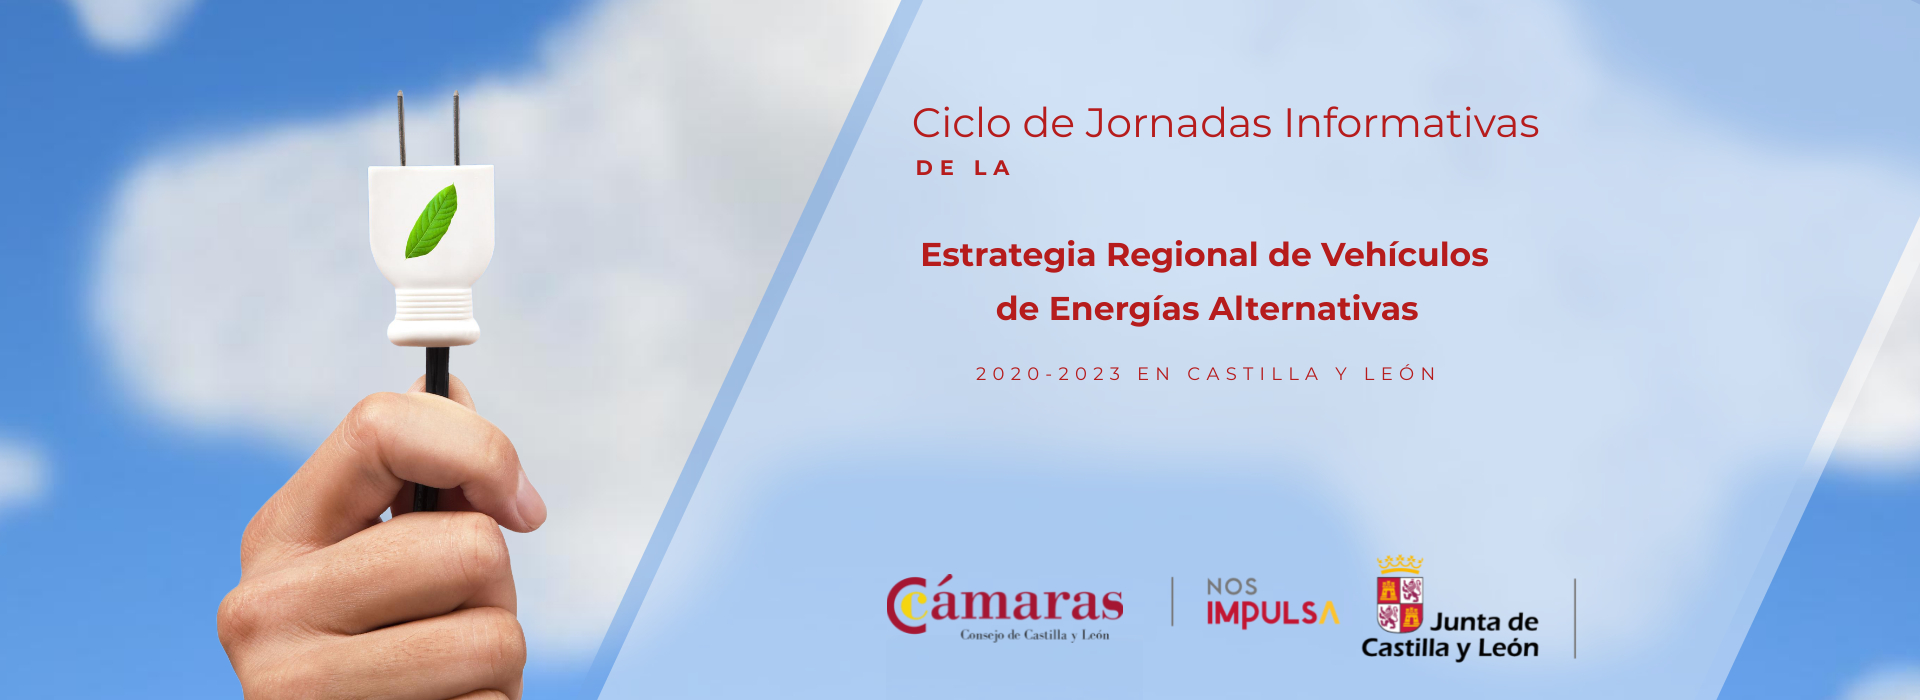 Ciclo de Jornadas Informativas de la Estrategia Regional de Vehículos de Energías Alternativas 2020-2023 en Castilla y León